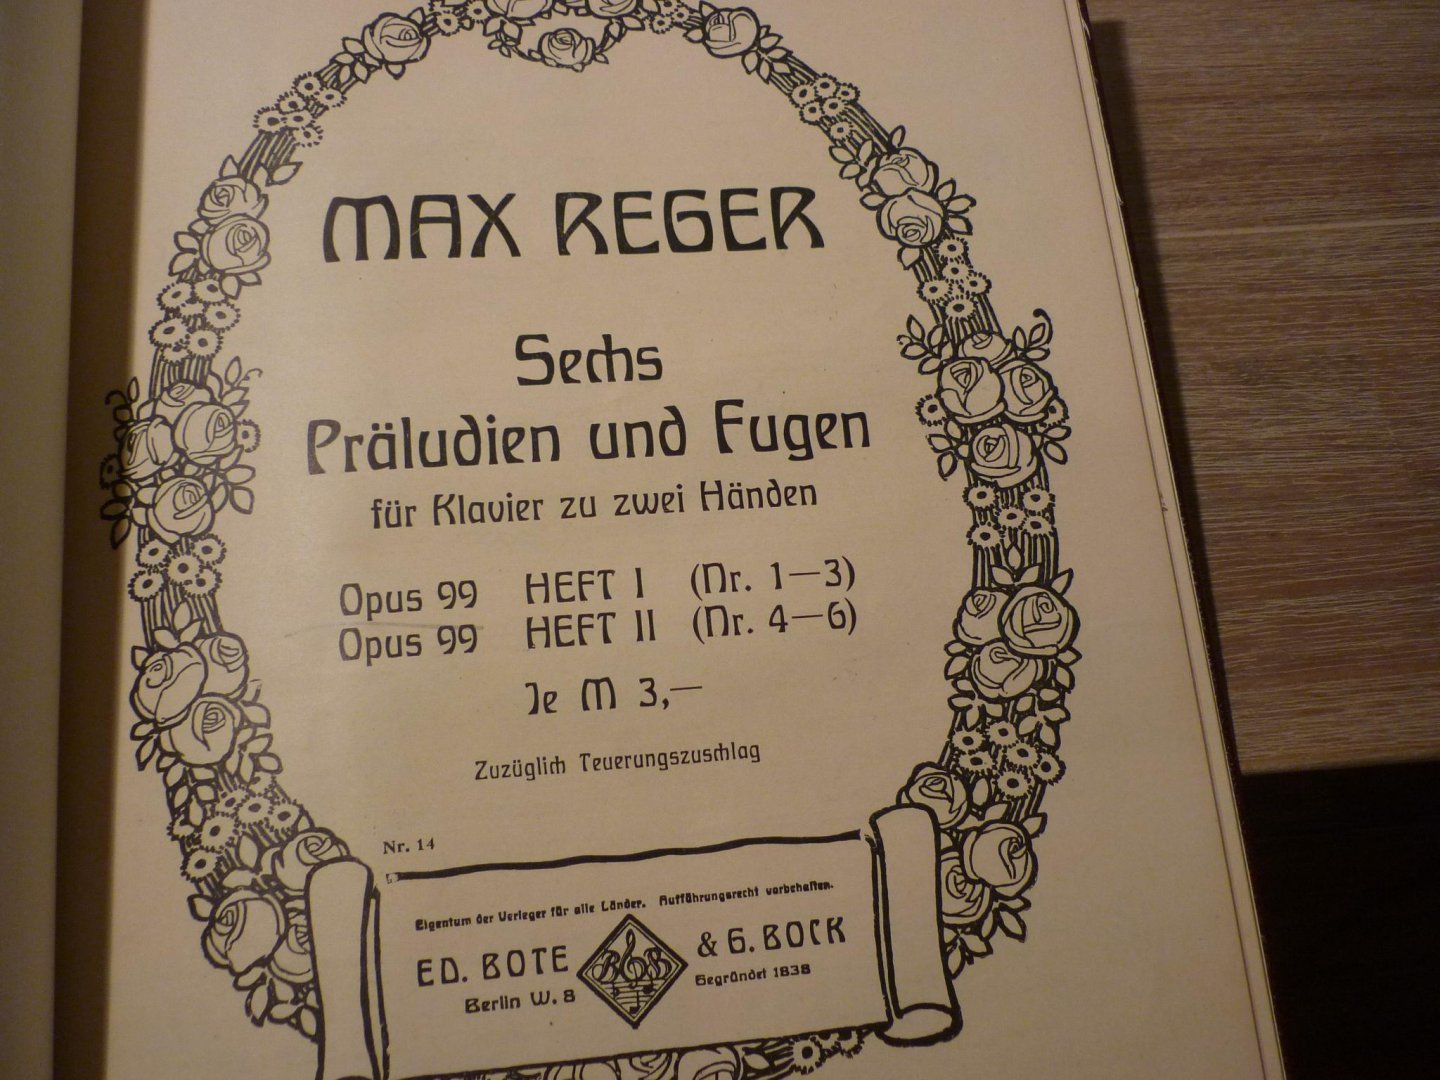 Reger; Max (1873 - 1916) - Verzamelalbum: Sechs Präludien und Fugen, op. 99; Heft I en Heft II (Nr. 1 - 6) voor Piano - Muziekboek)